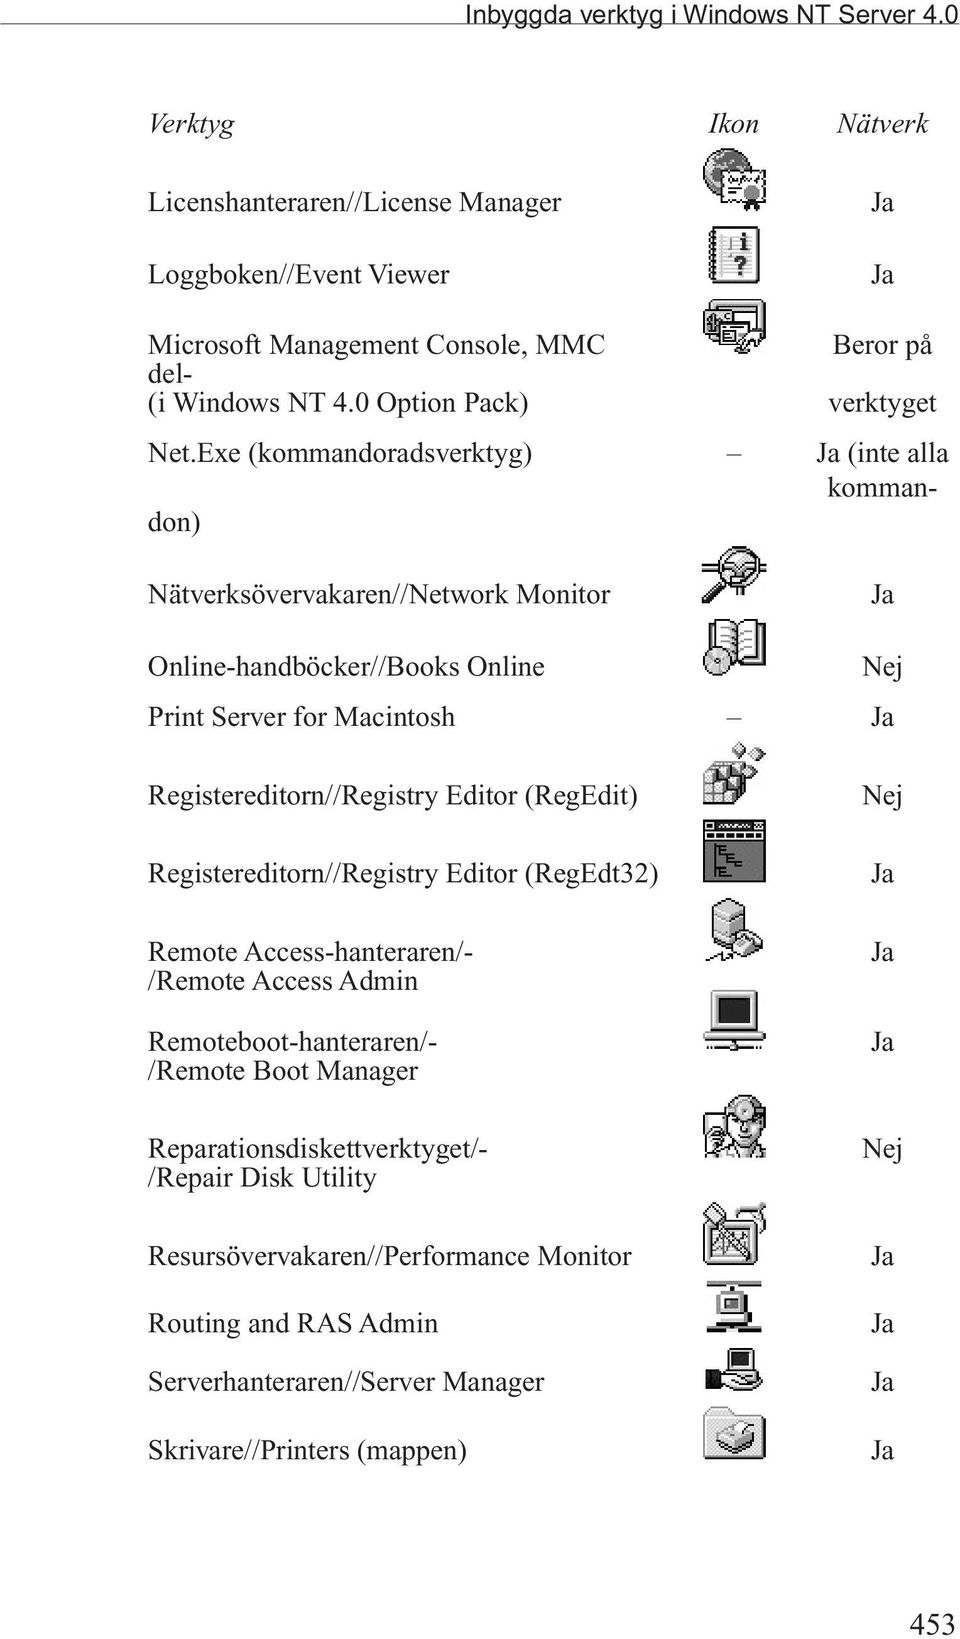 Exe (kommandoradsverktyg) Ja (inte alla kommandon) Nätverksövervakaren//Network Monitor Ja Online-handböcker//Books Online Nej Print Server for Macintosh Ja Registereditorn//Registry Editor